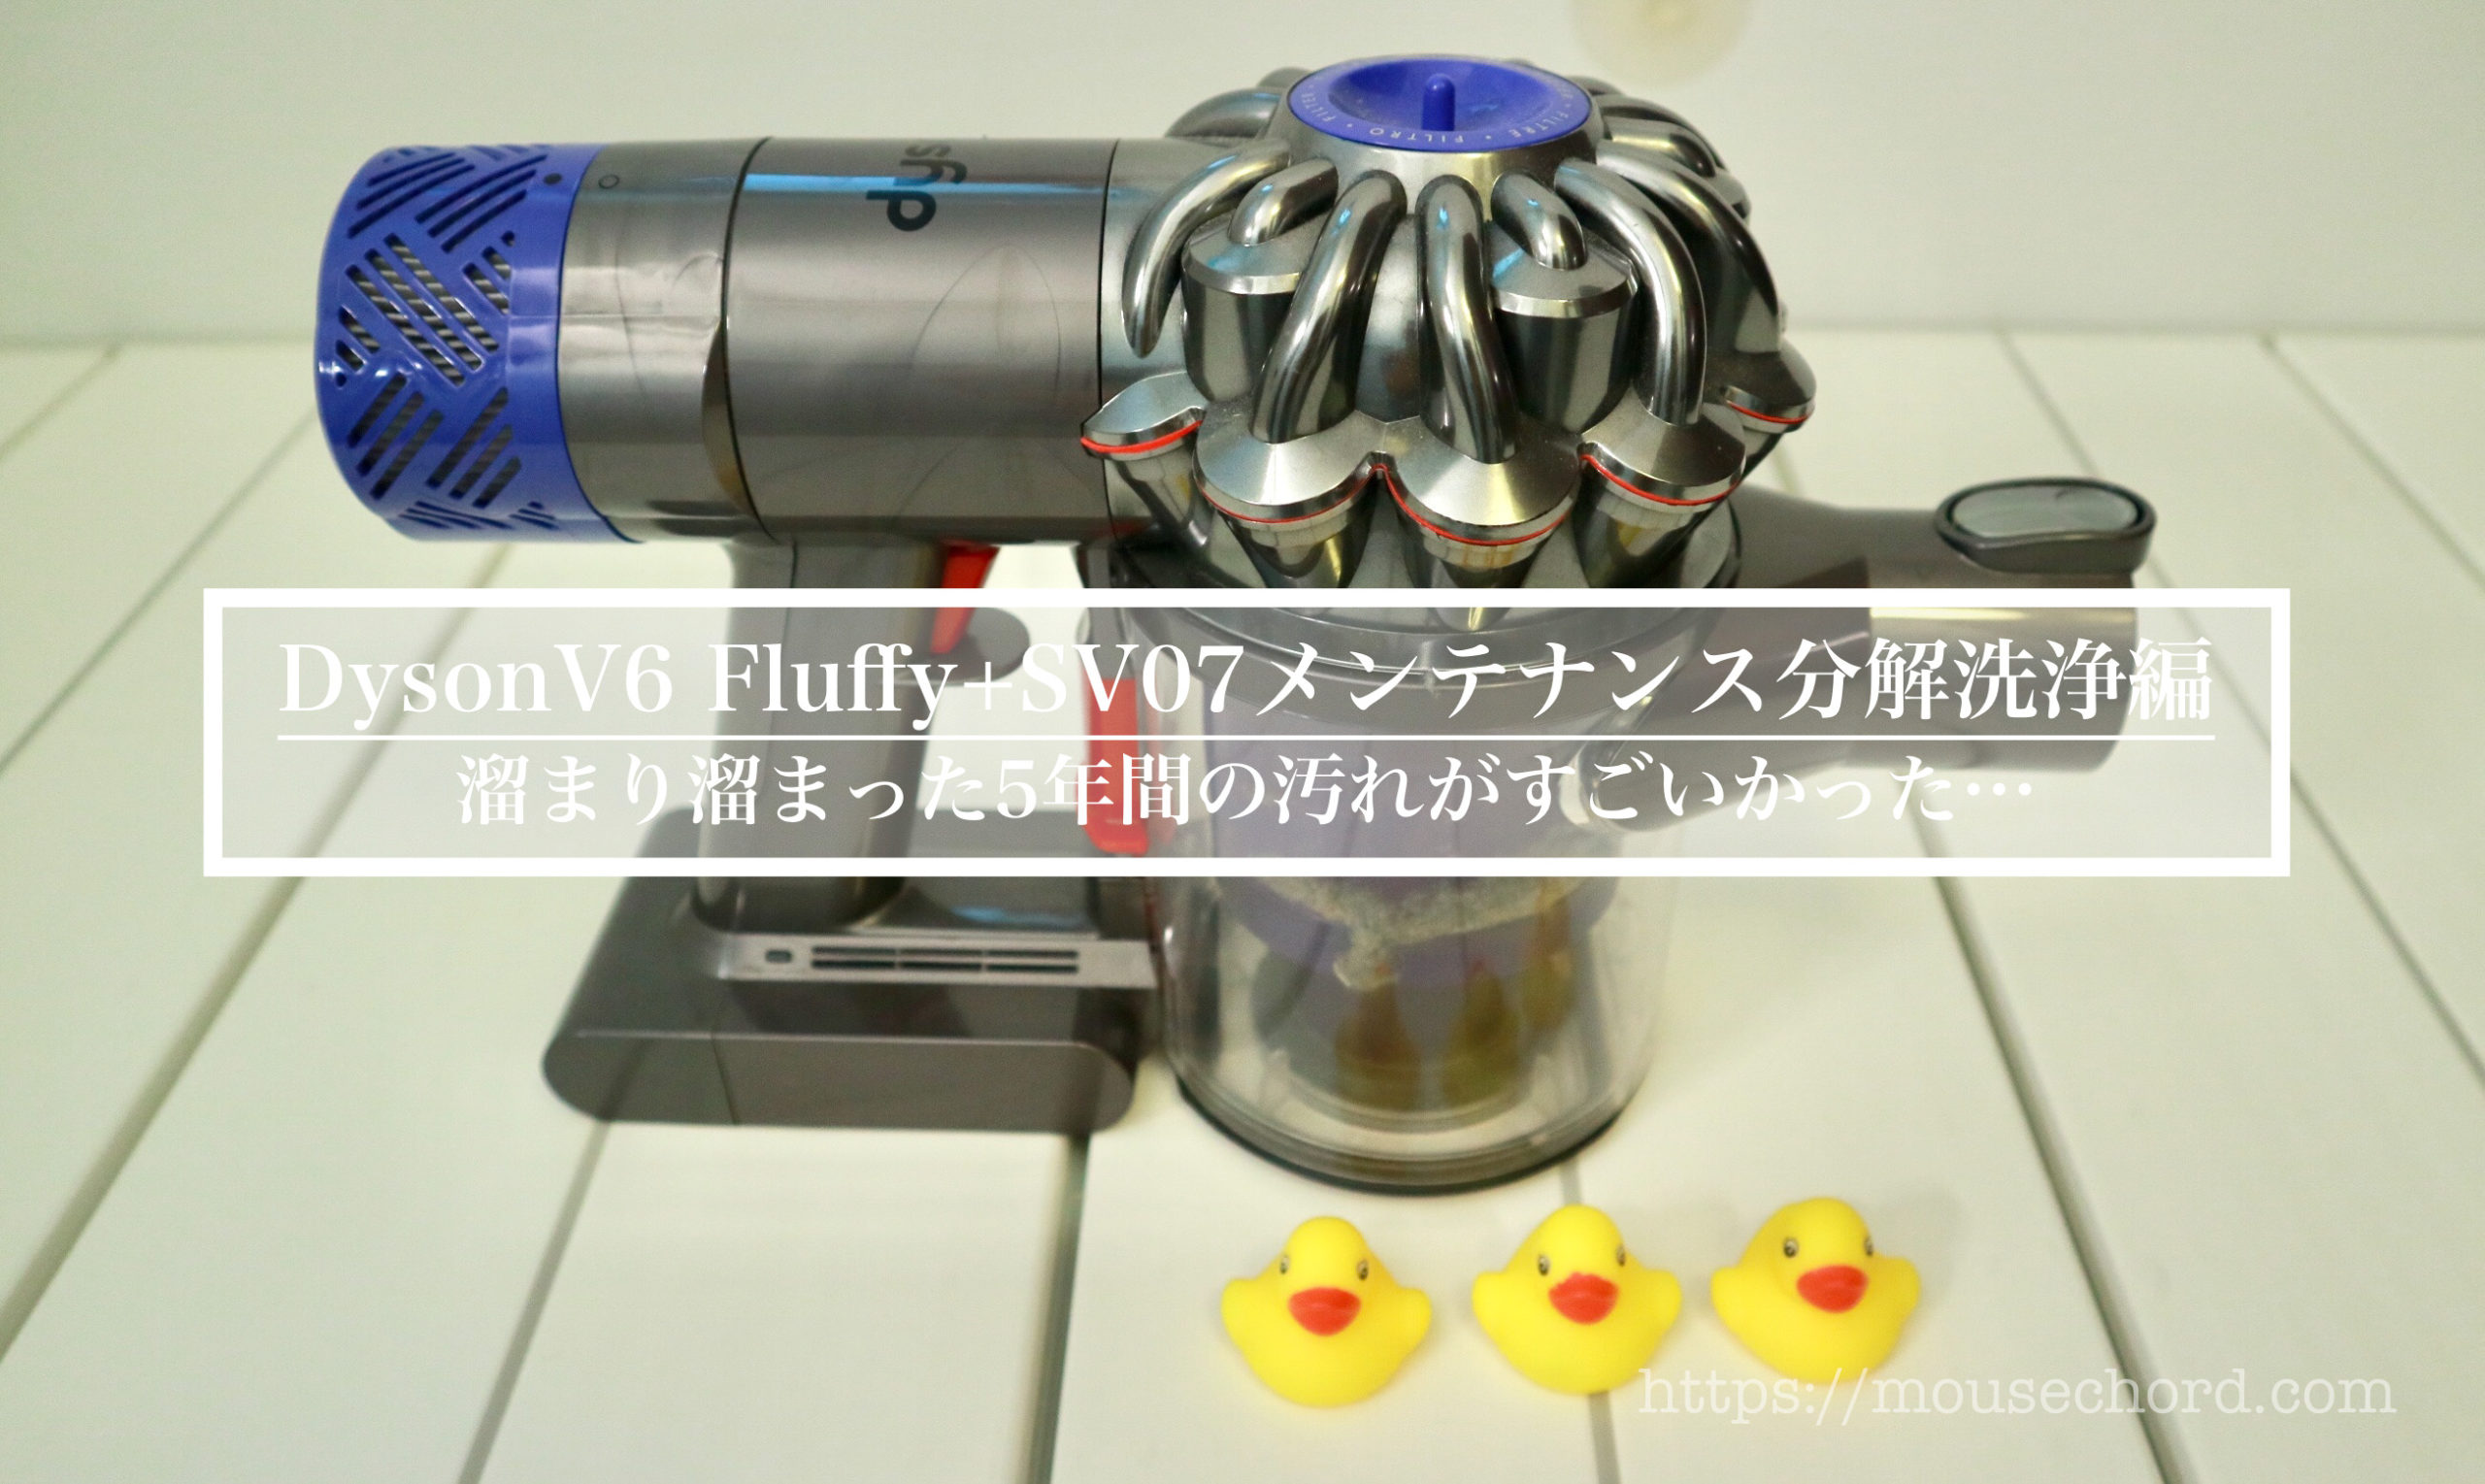 分解洗浄] Dyson V6 Fluffy+SV07メンテナンス編！ - MouseChord.com